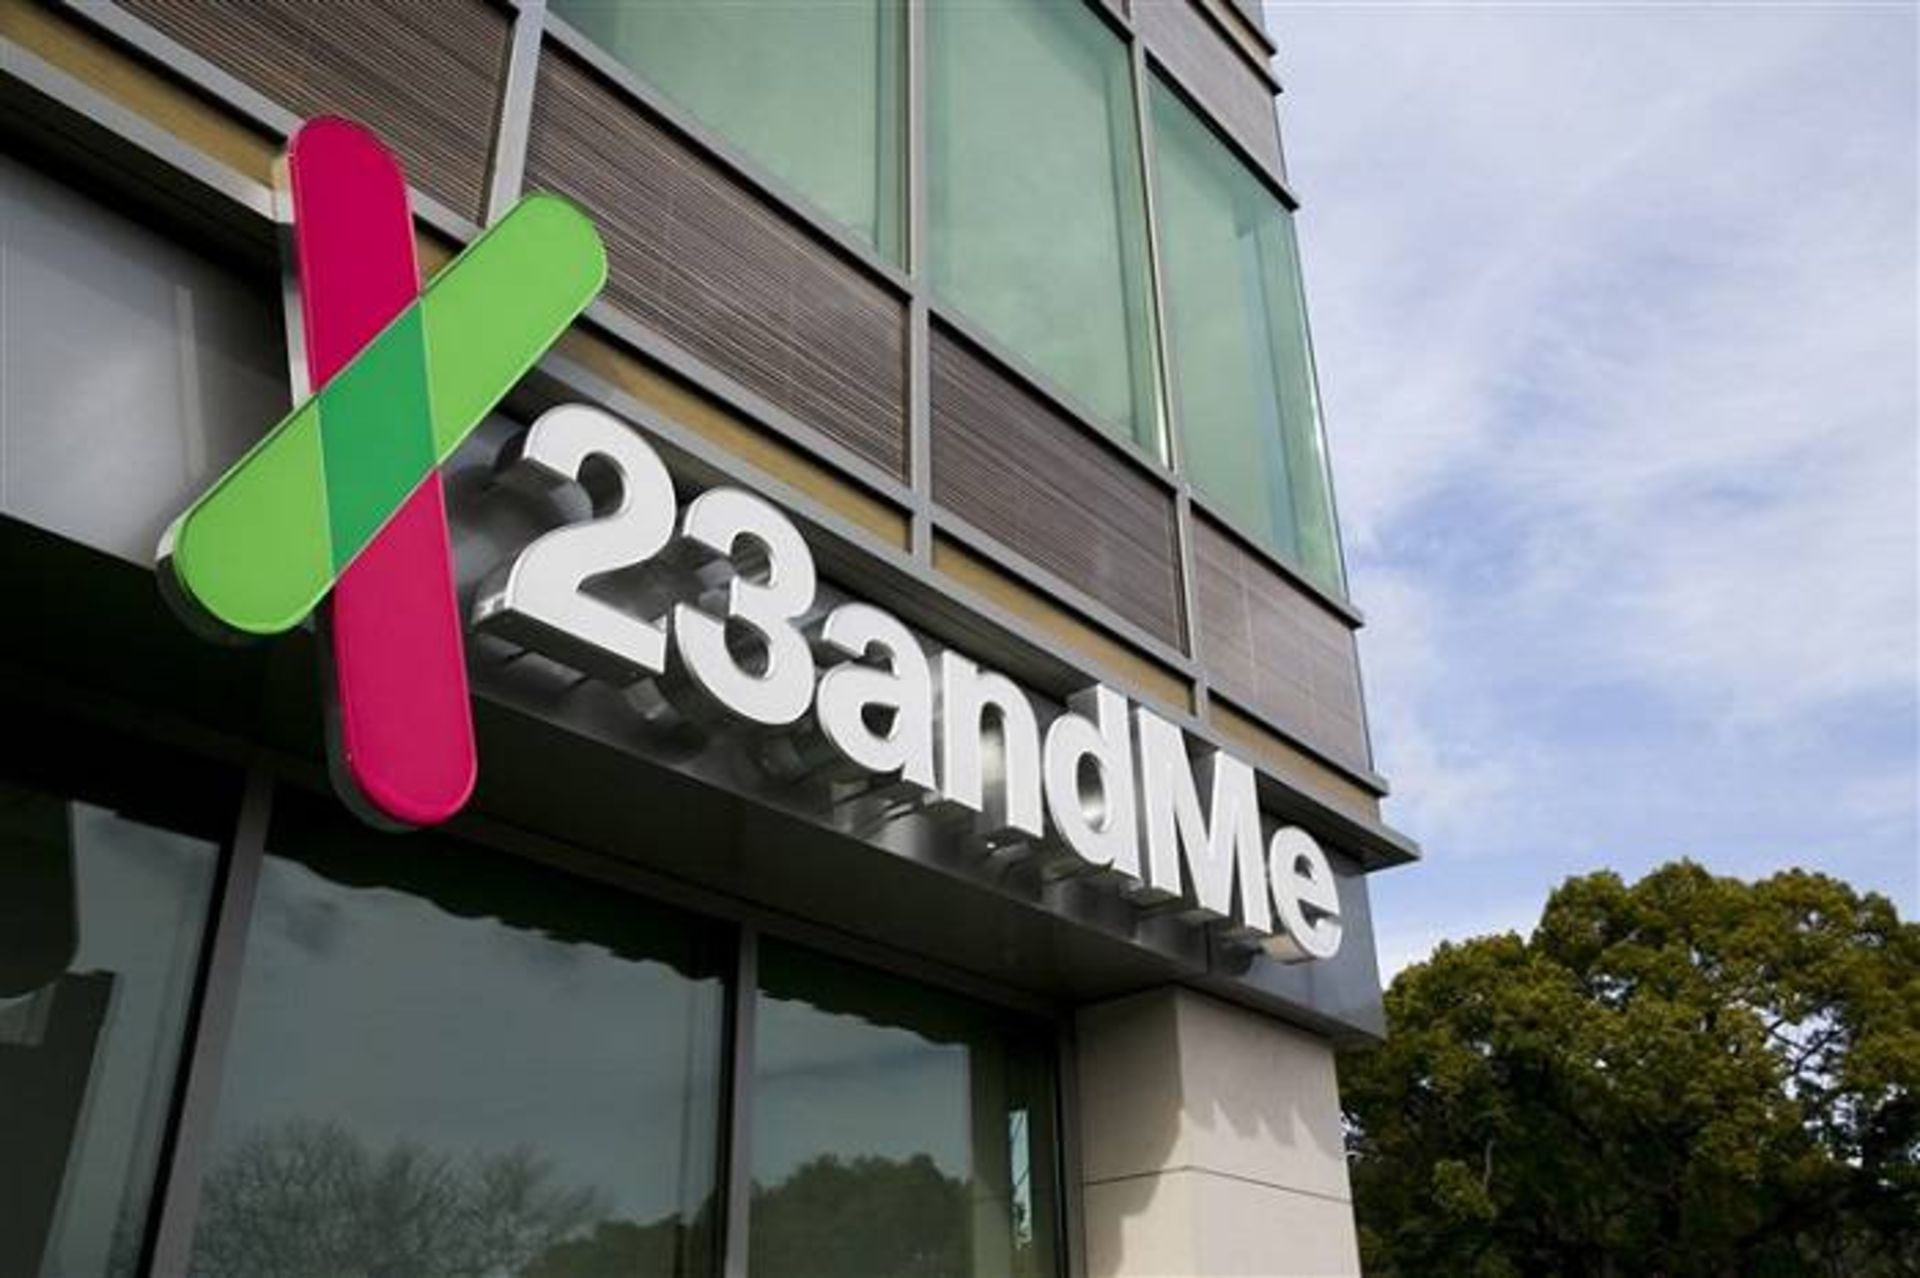 مرجع متخصصين ايران شركت 23andMe